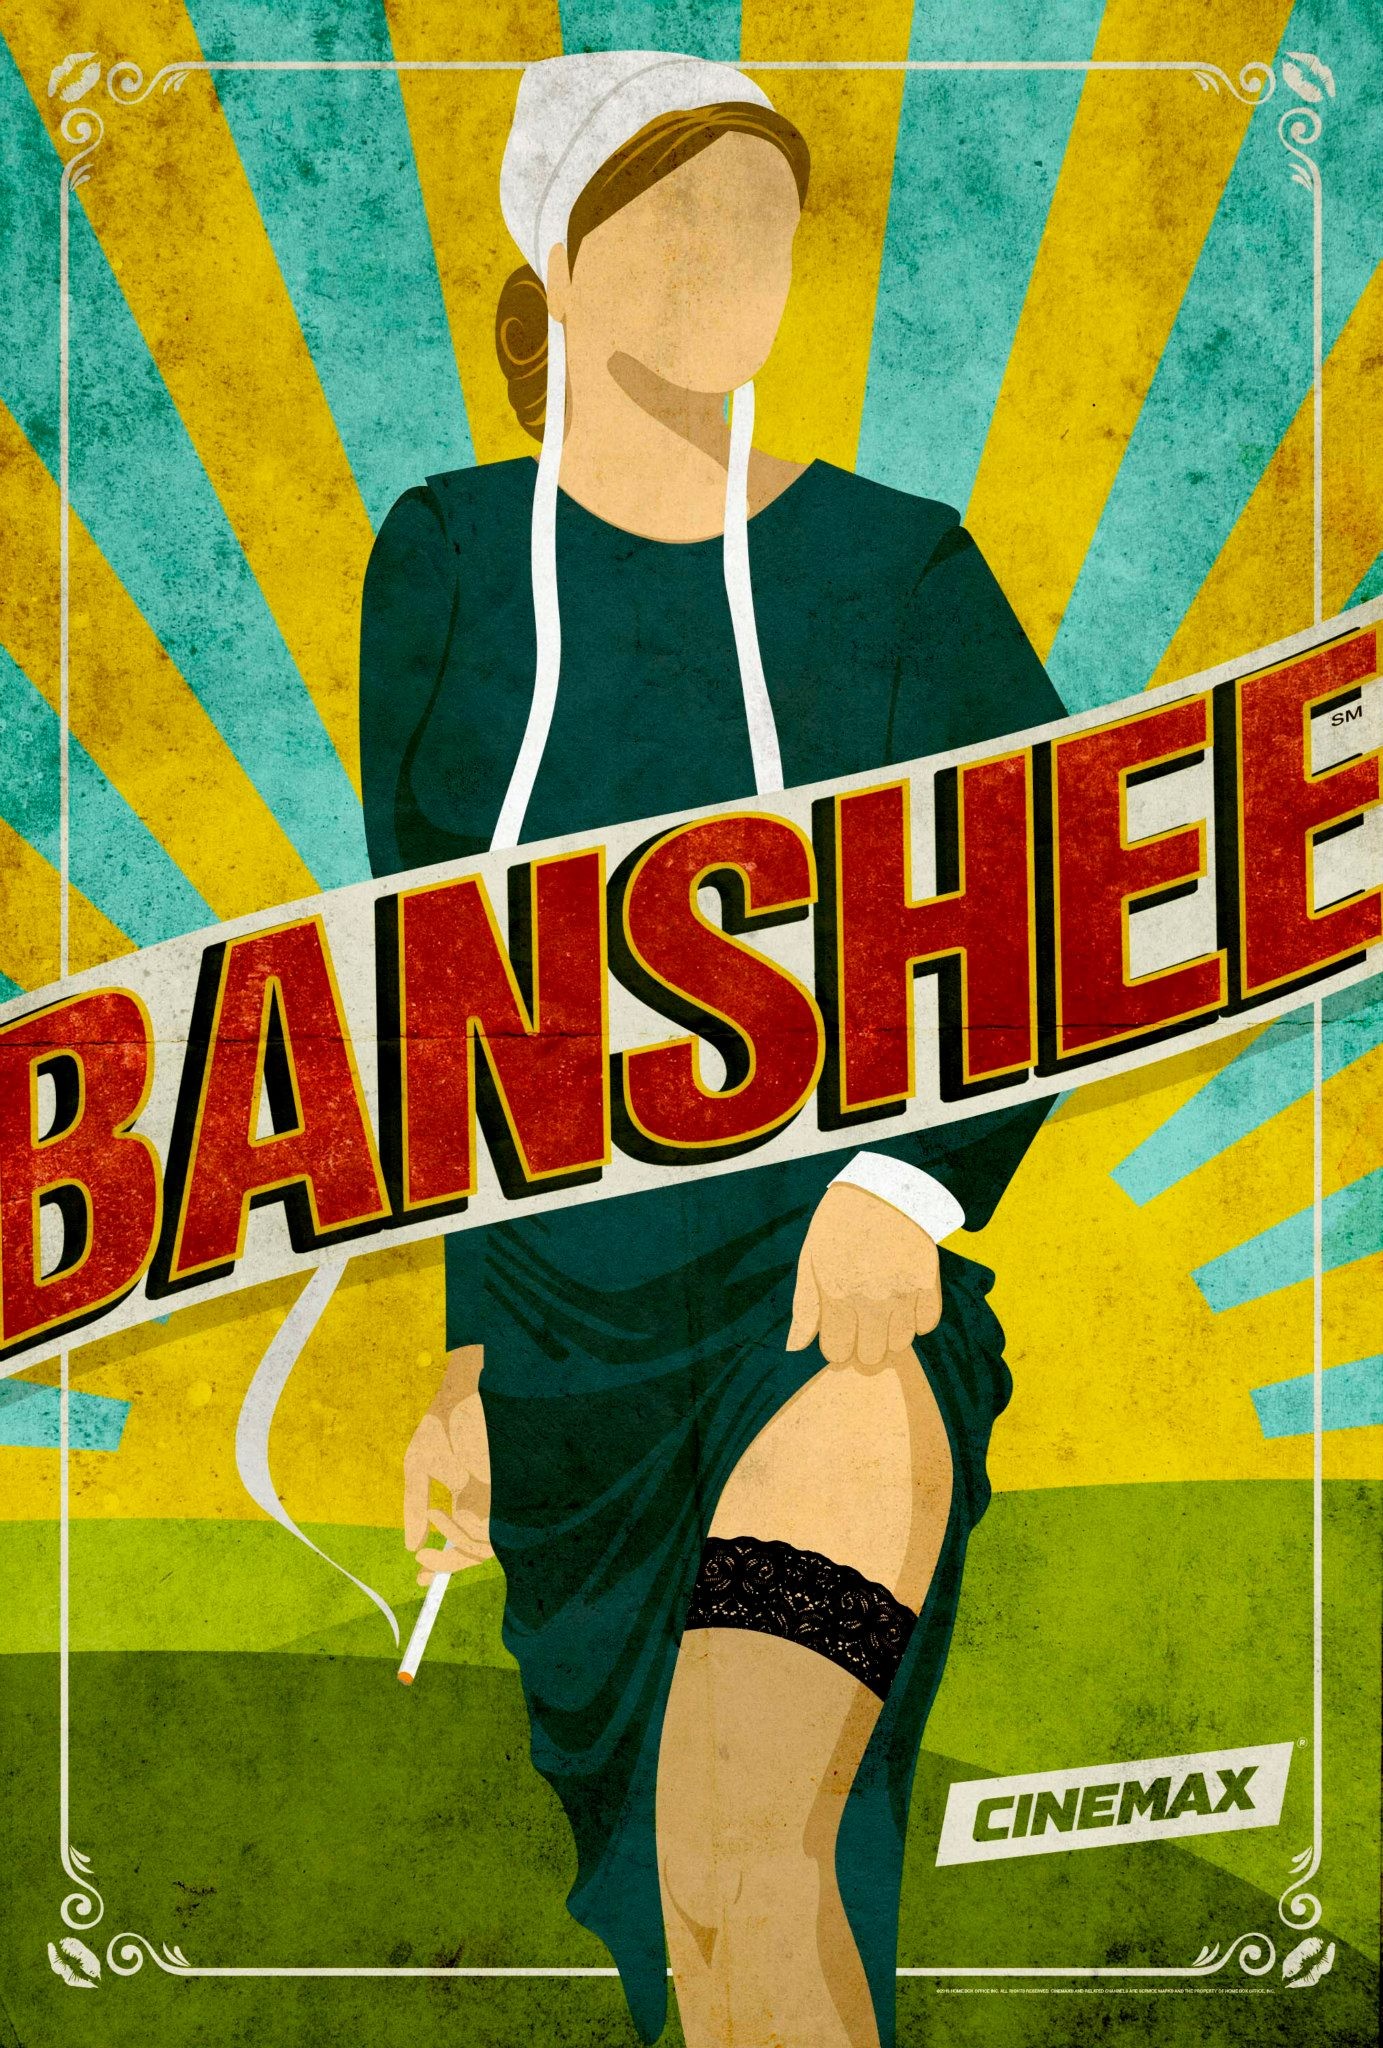 Mega Sized TV Poster Image for Banshee (#5 of 18)